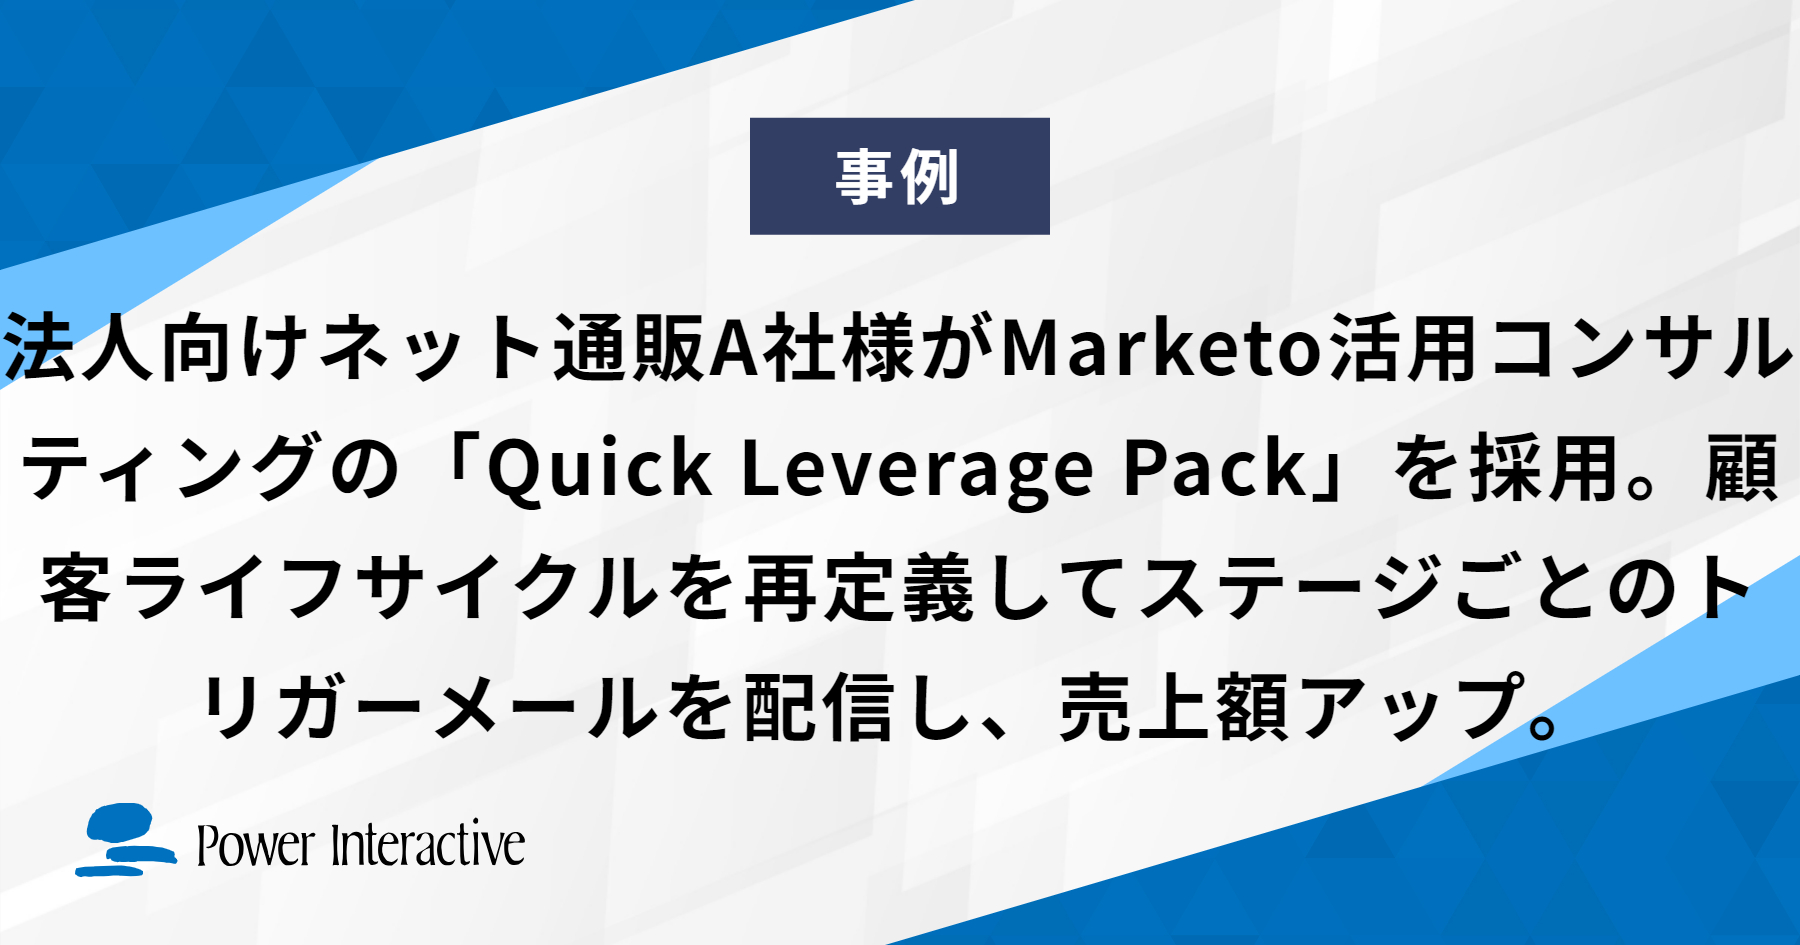 法人向けネット通販A社様がMarketo活用コンサルティングの「Quick Leverage Pack」を採用。顧客ライフサイクルを再定義してステージごとのトリガーメールを配信し、売上額アップ。